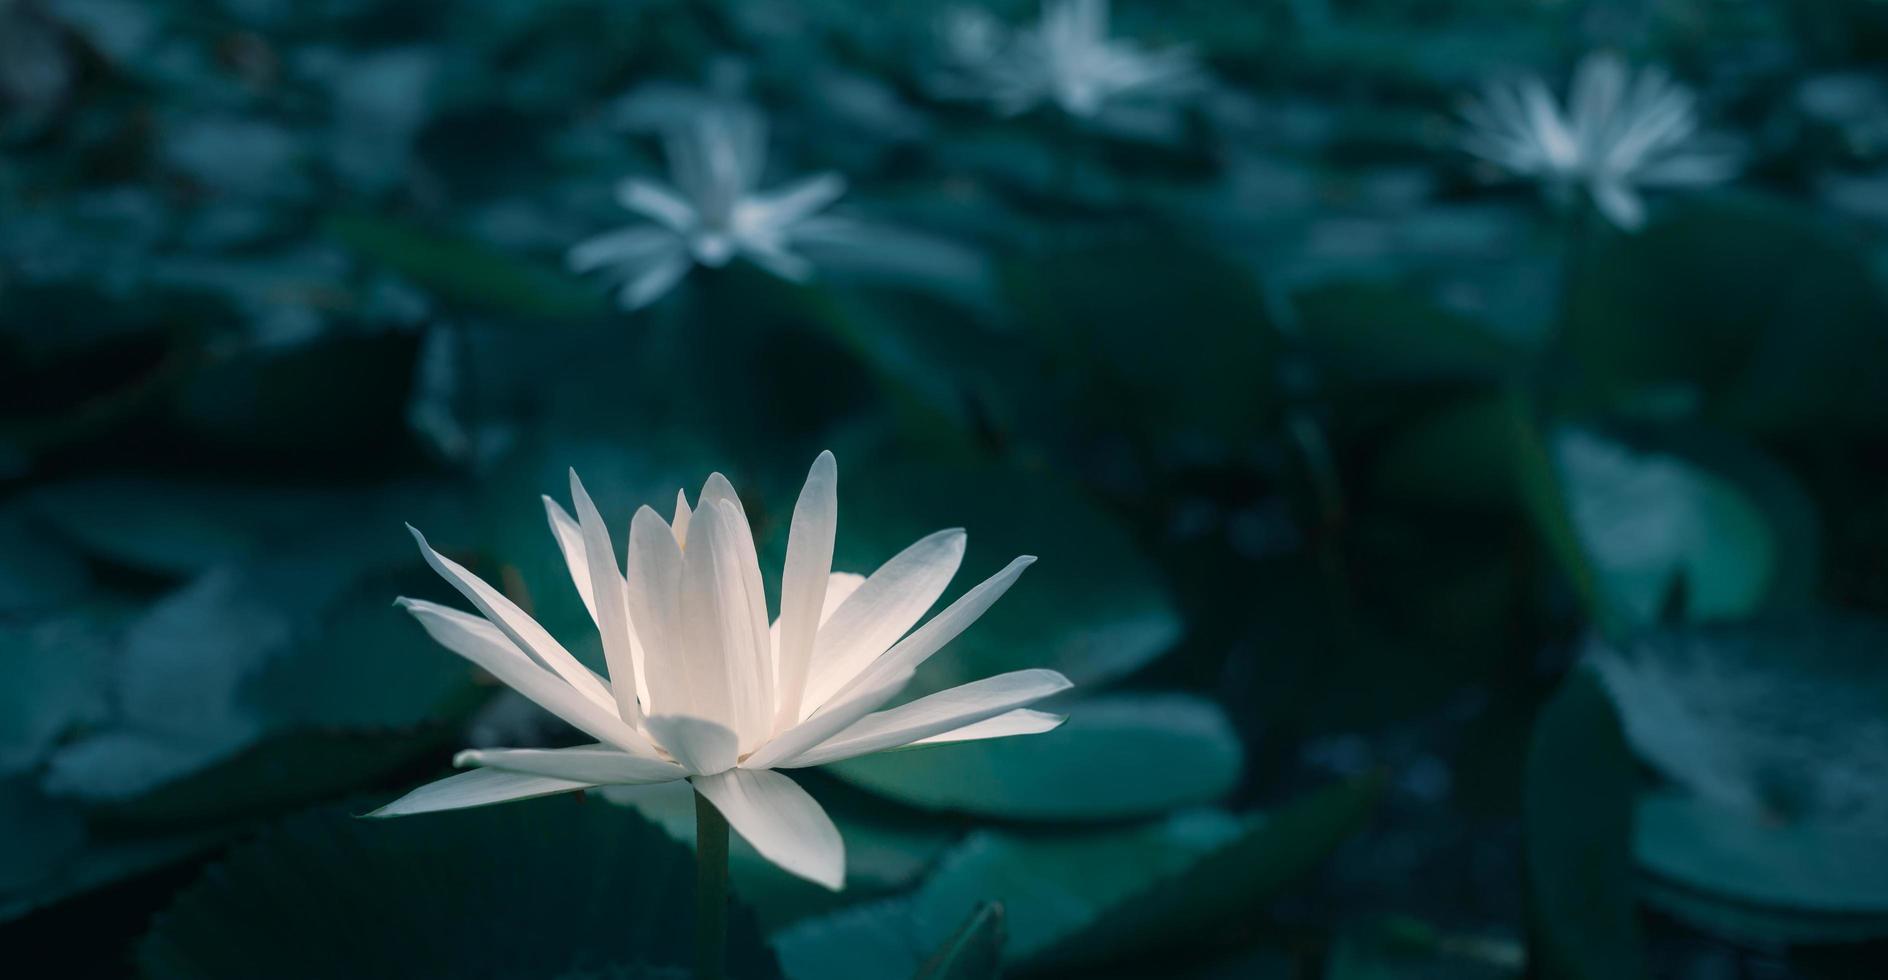 primer plano hermosa flor de loto blanco en el estanque.lirio de fondo de flor de loto blanco flotando en el agua foto